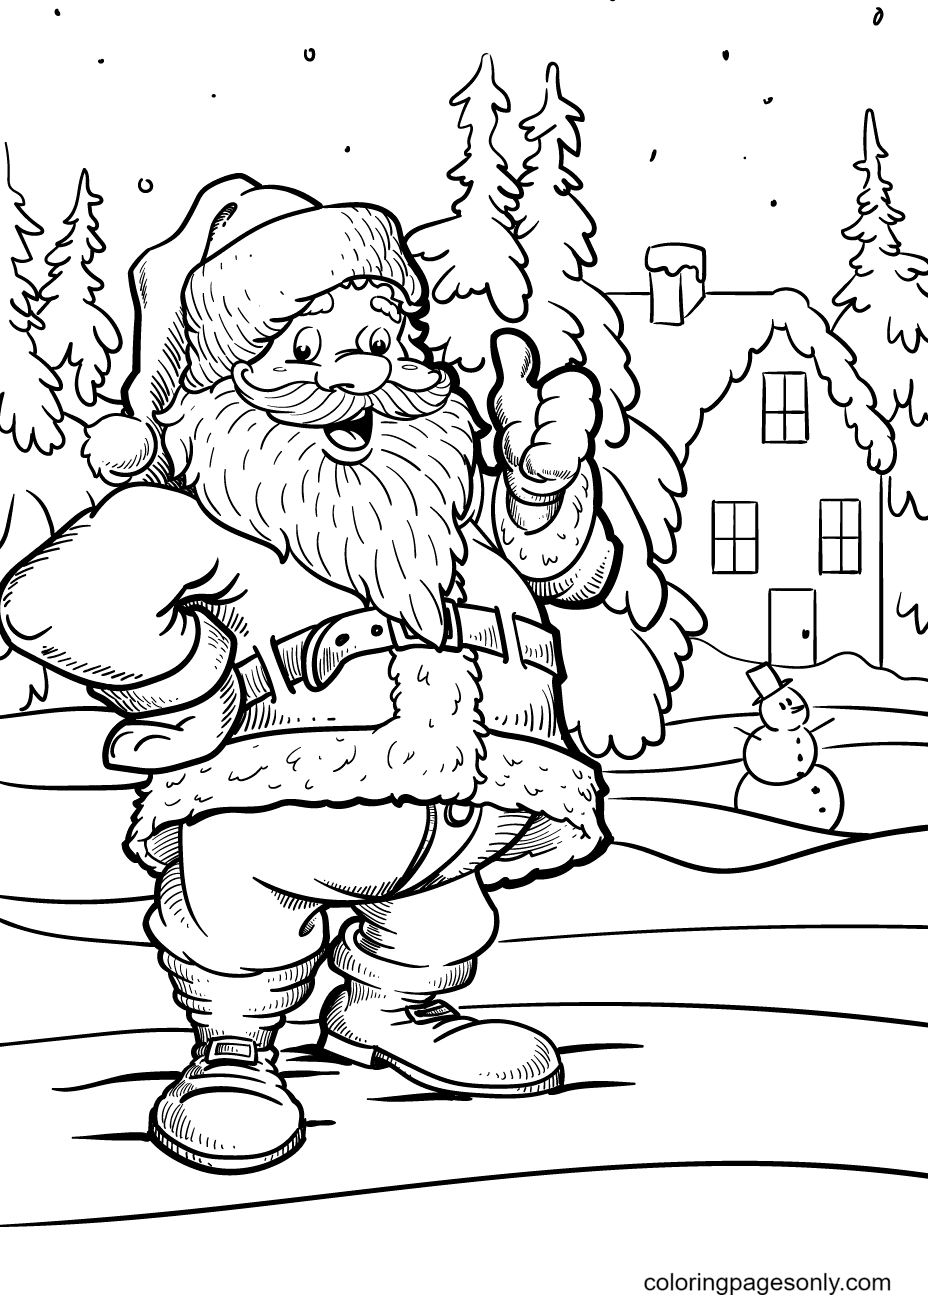 Санта-Клаус улыбается и показывает большой палец вверх возле дома от Санта-Клауса